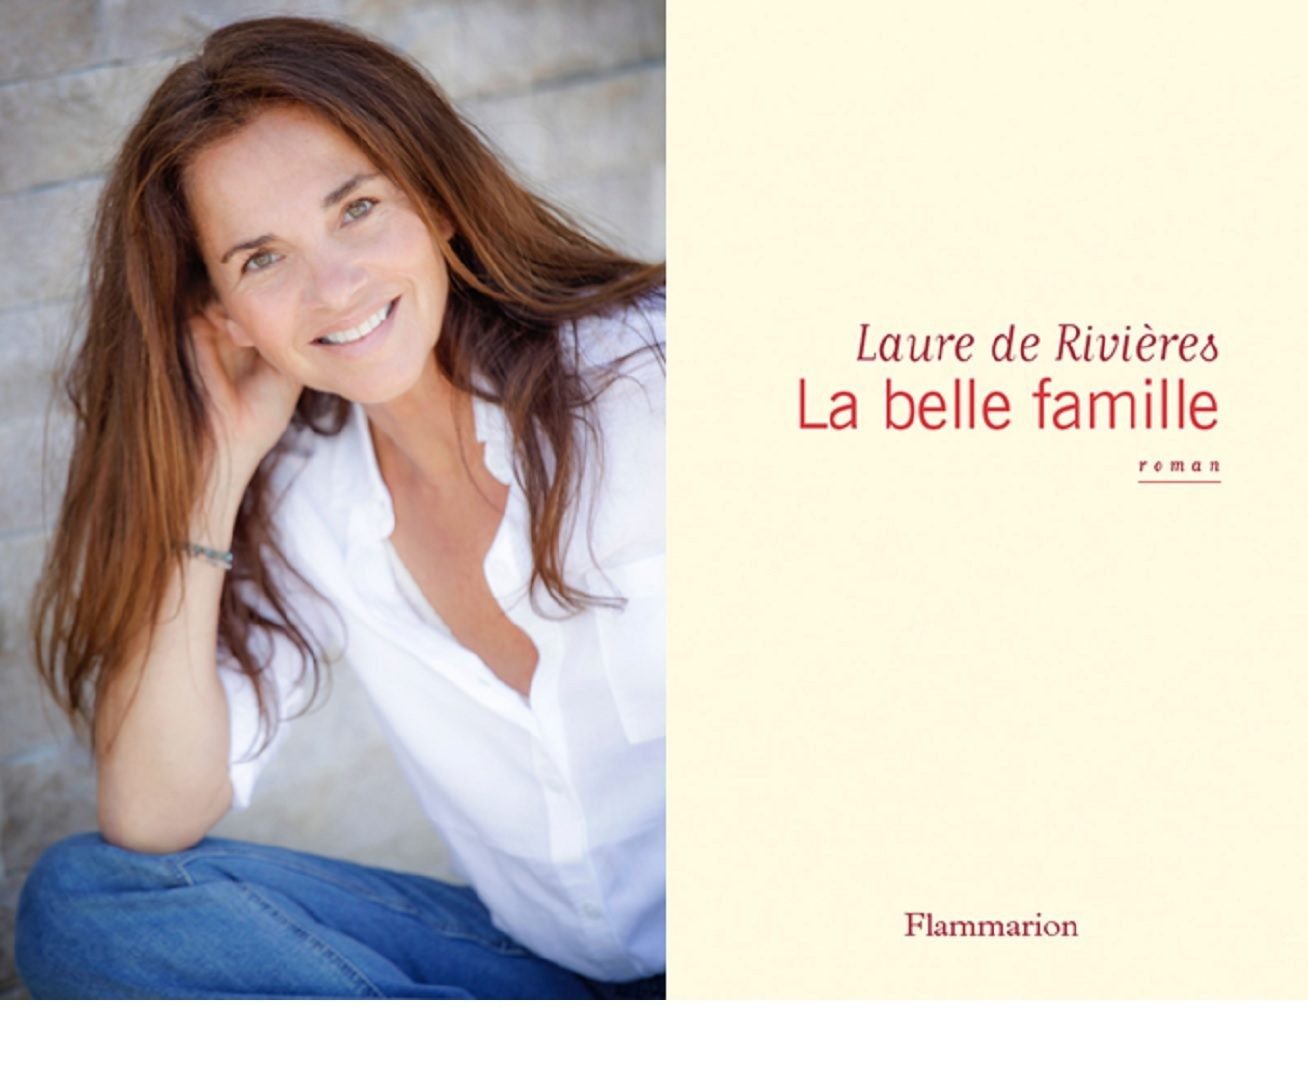 Laure de Rivières, Author, La Belle Famille